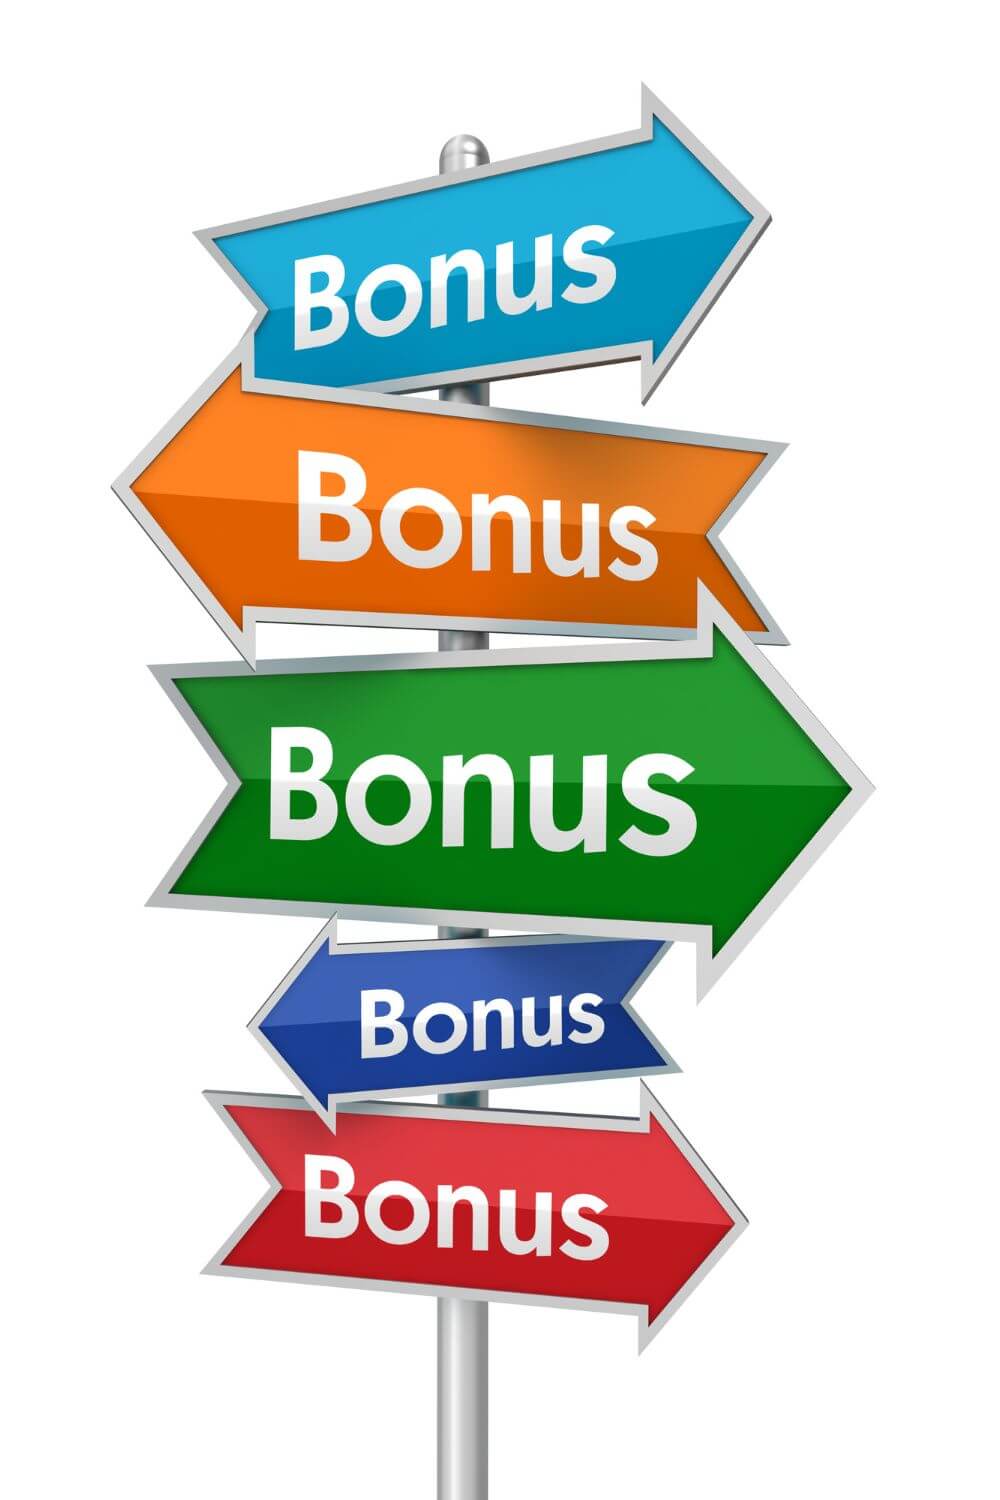 Применяйте систему накопительных бонусов в программе автоматизации торговли TEZ KASSA